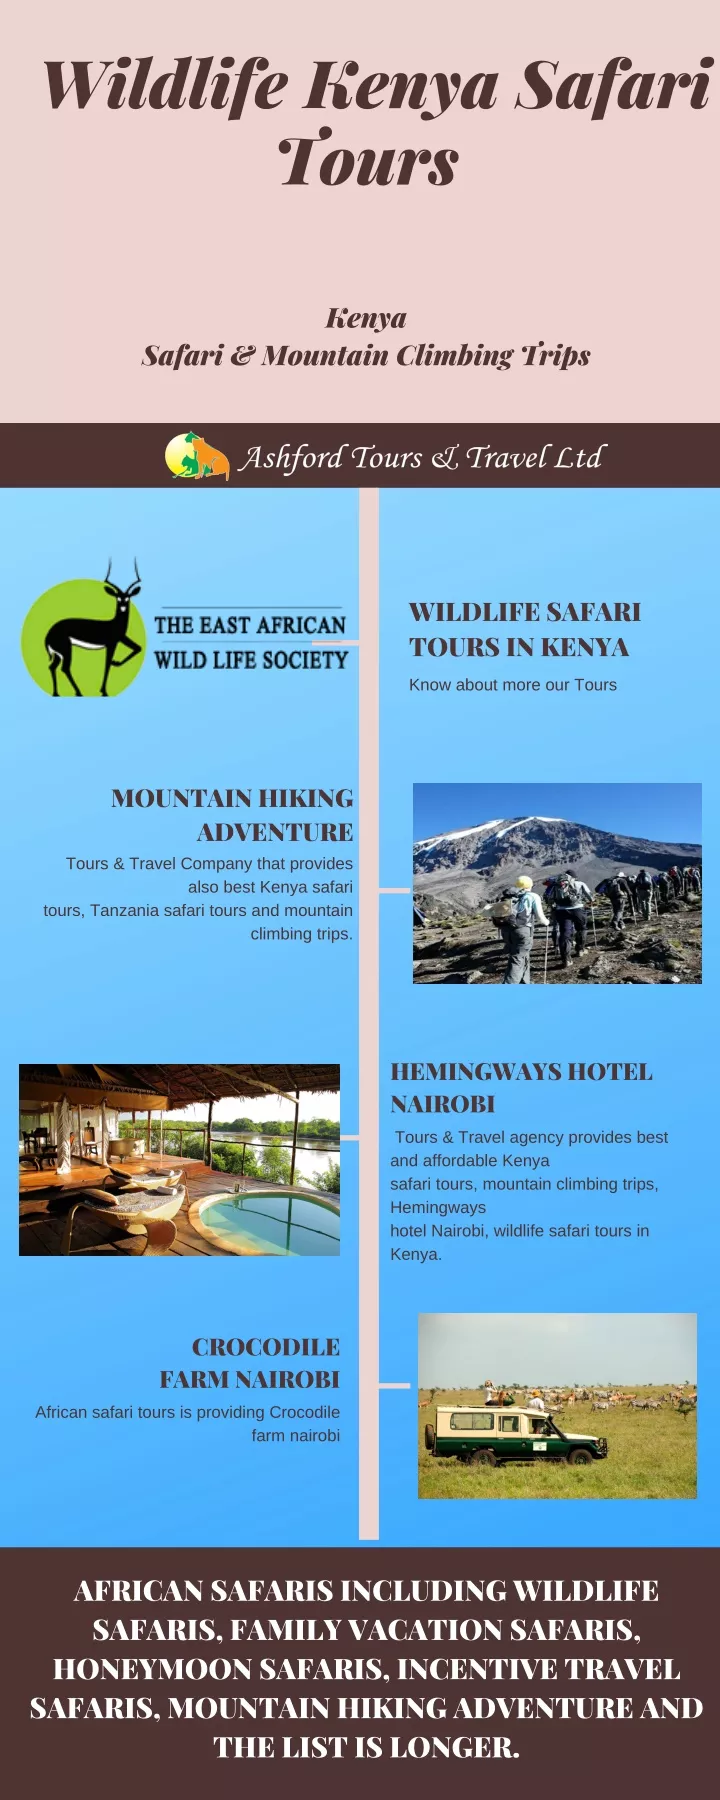 wildlife kenya safari tours